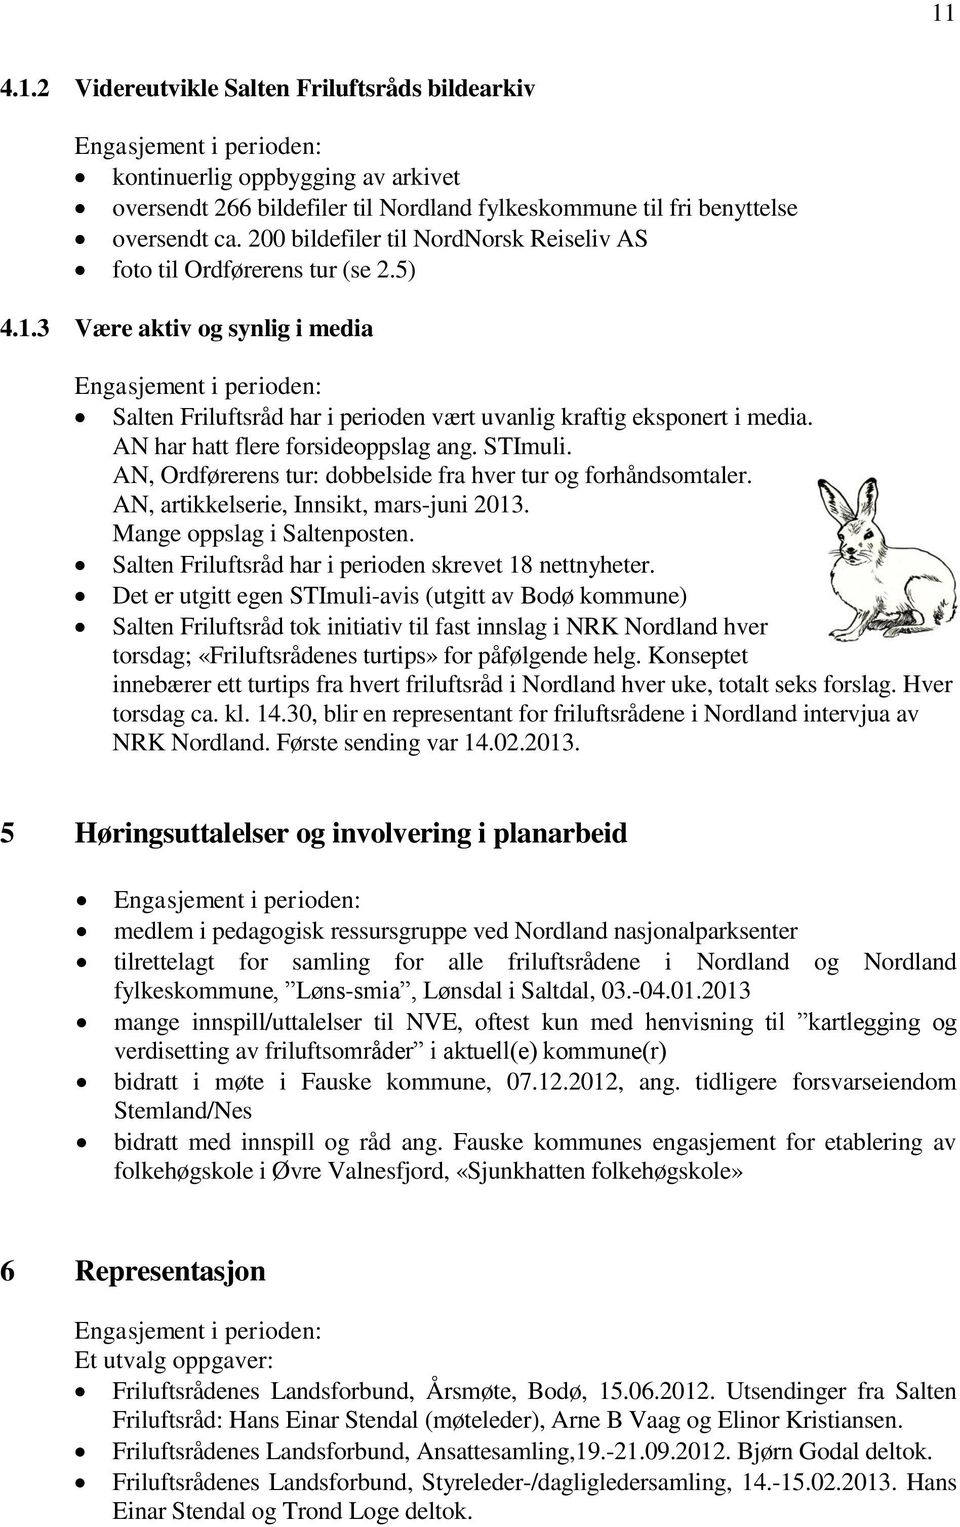 AN har hatt flere forsideoppslag ang. STImuli. AN, Ordførerens tur: dobbelside fra hver tur og forhåndsomtaler. AN, artikkelserie, Innsikt, mars-juni 2013. Mange oppslag i Saltenposten.